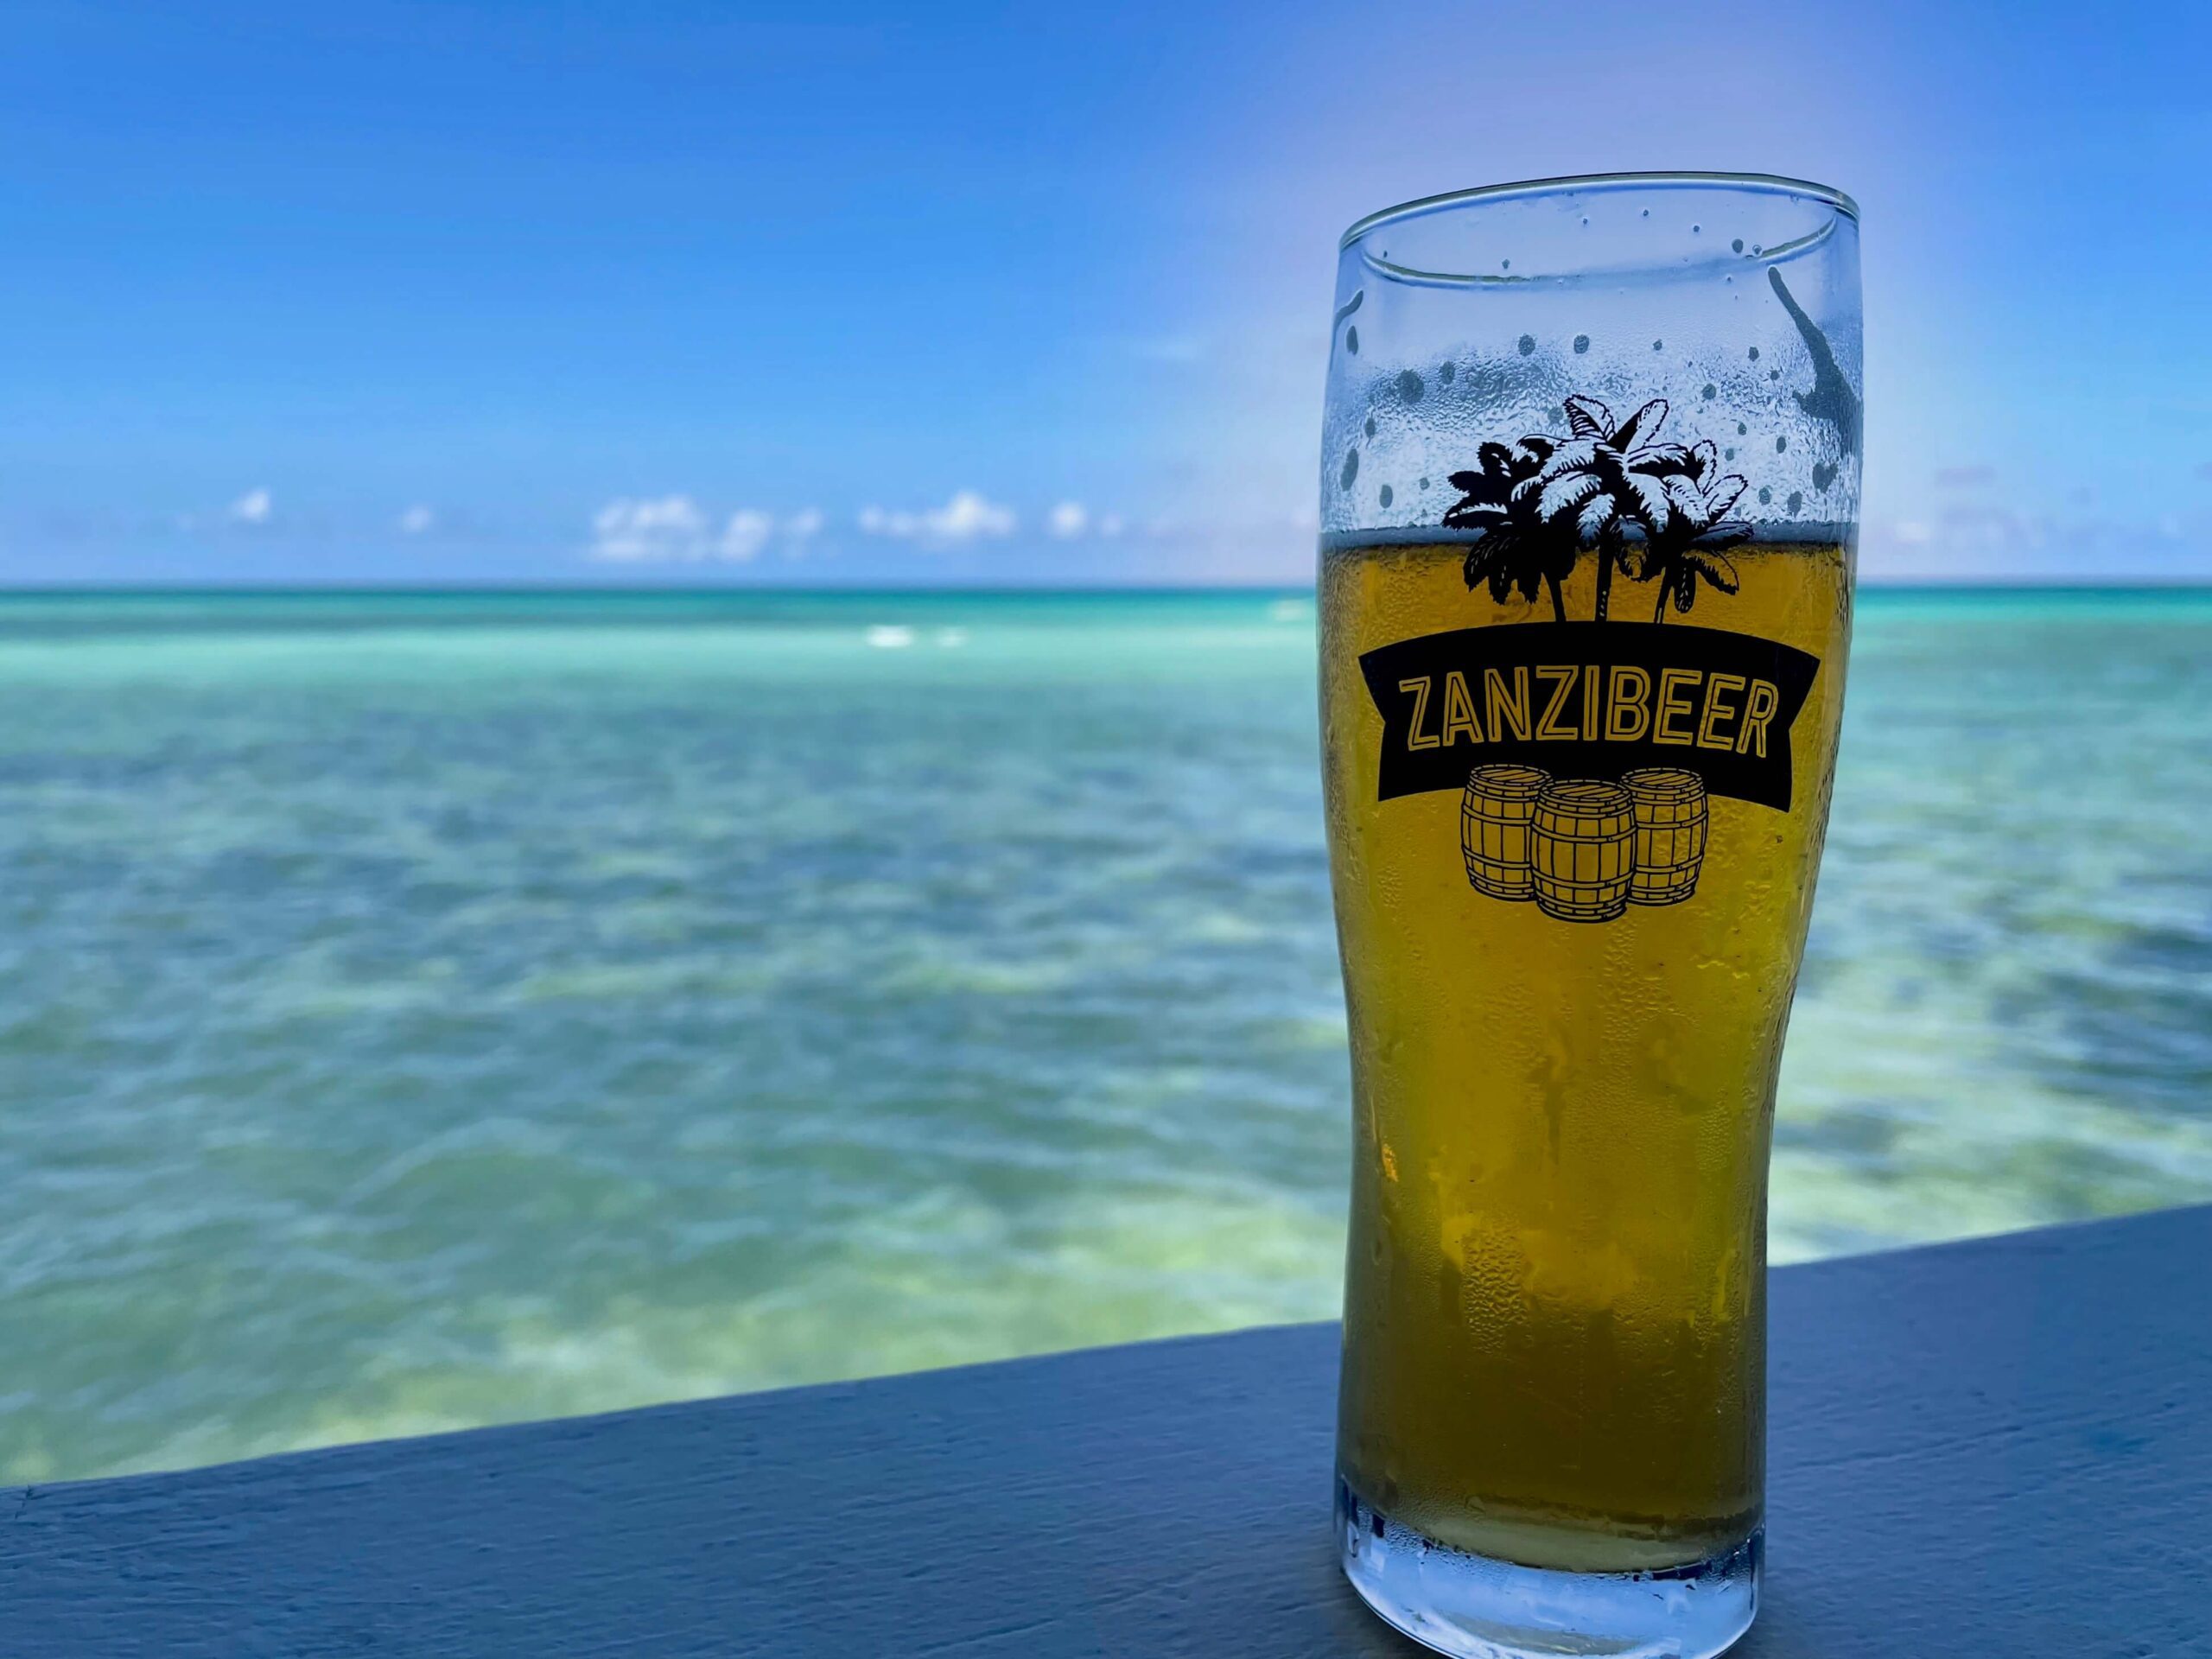 Tanzania, Zanzibar - Local beer